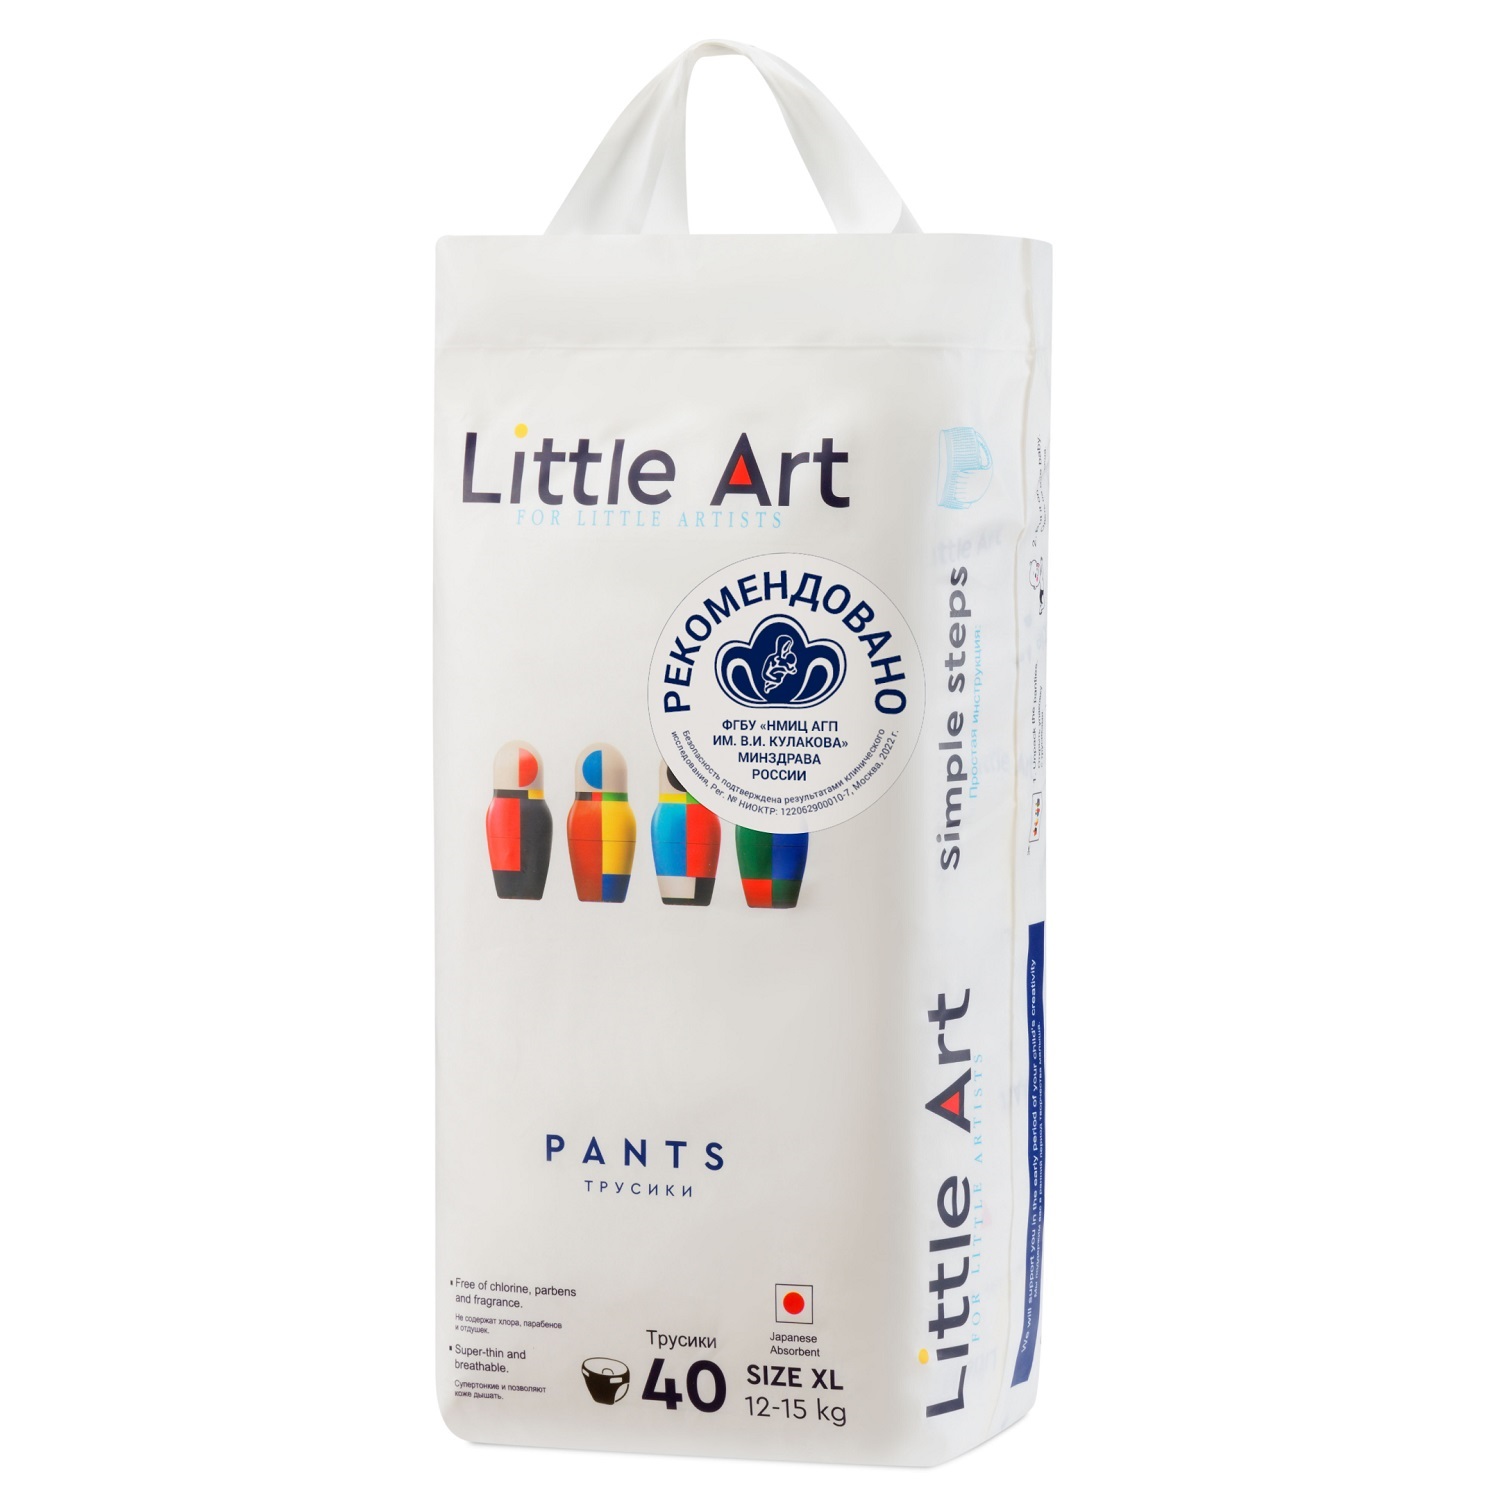 Купить Little Art Детские трусики-подгузники размер XL 12-15 кг, 40 шт (Little Art, Трусики-подгузники), Китай